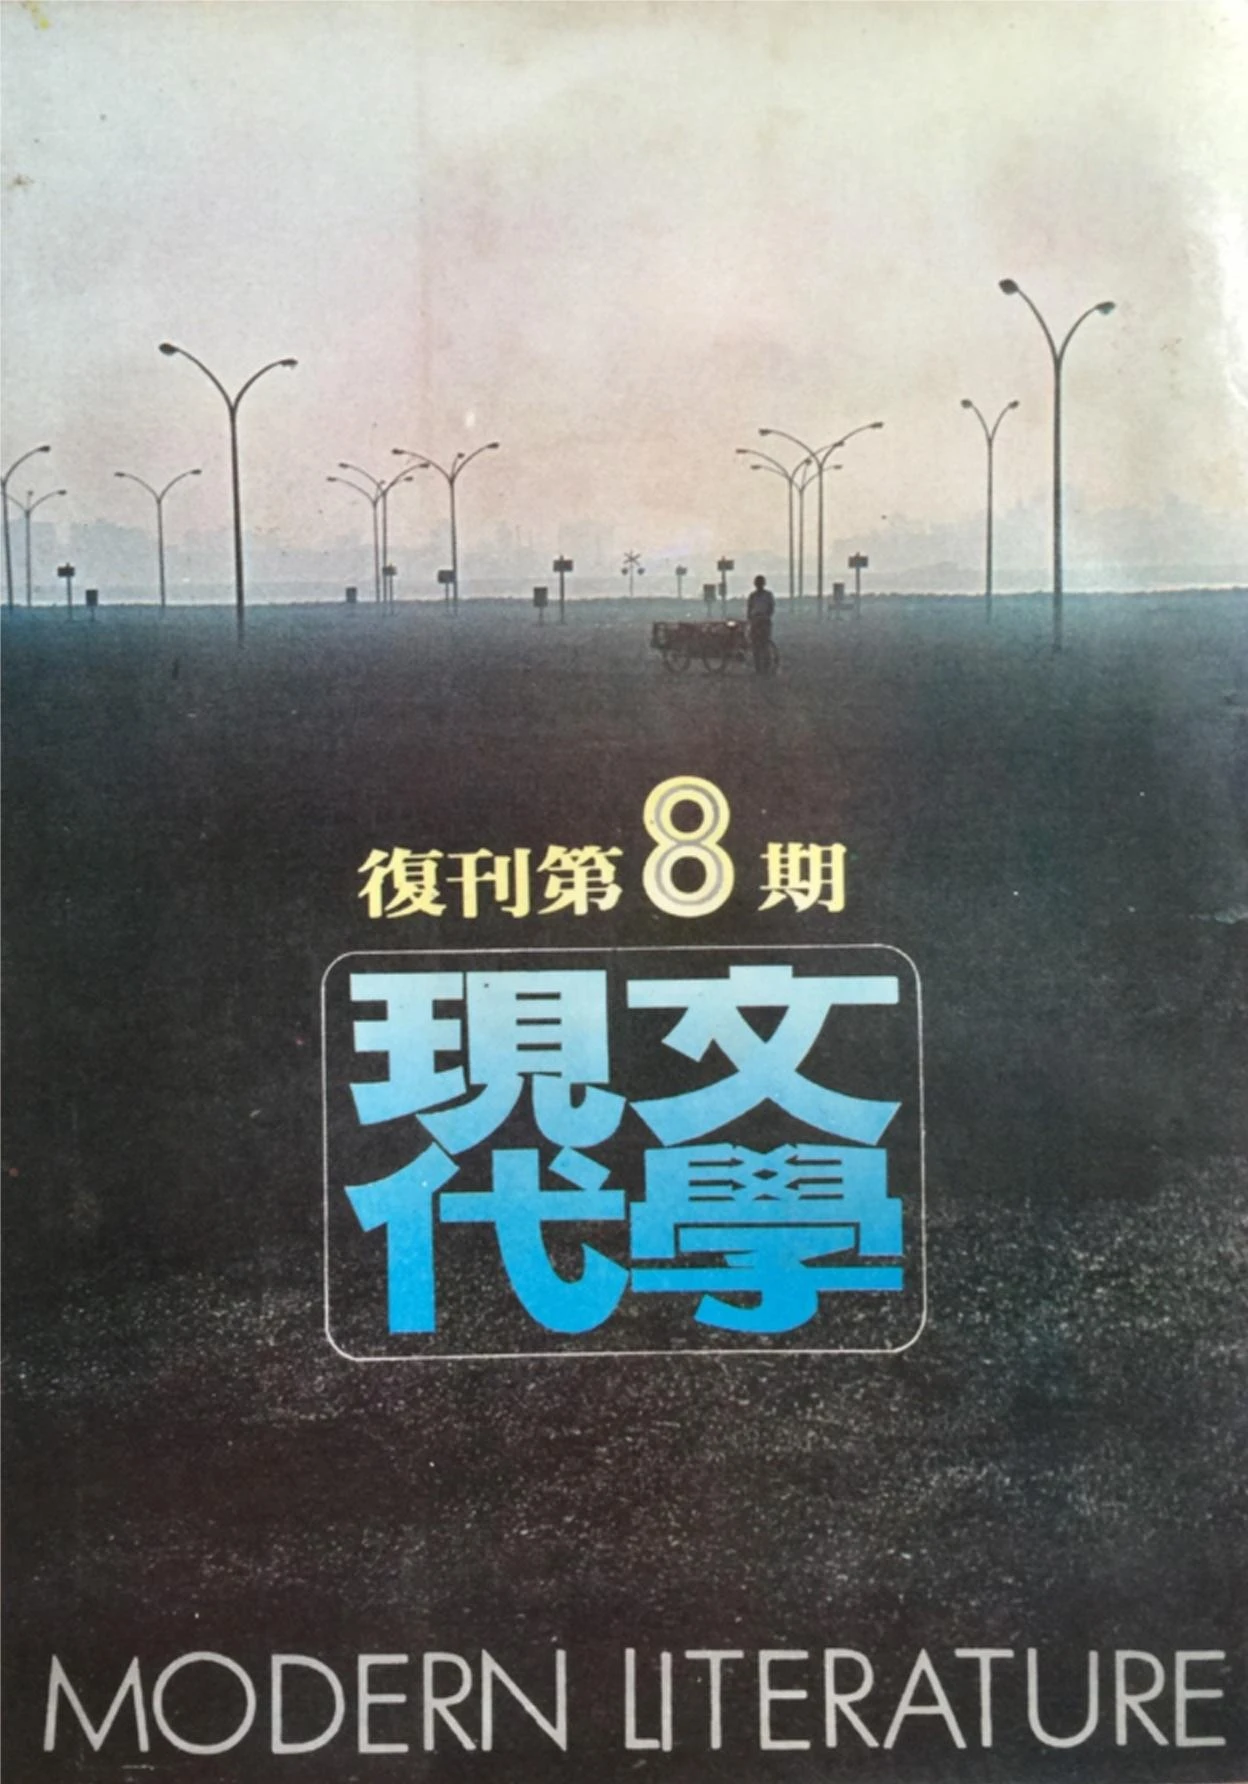 《現代文學》雜誌復刊第八期，1979.8 ©吳瑪悧提供-圖片